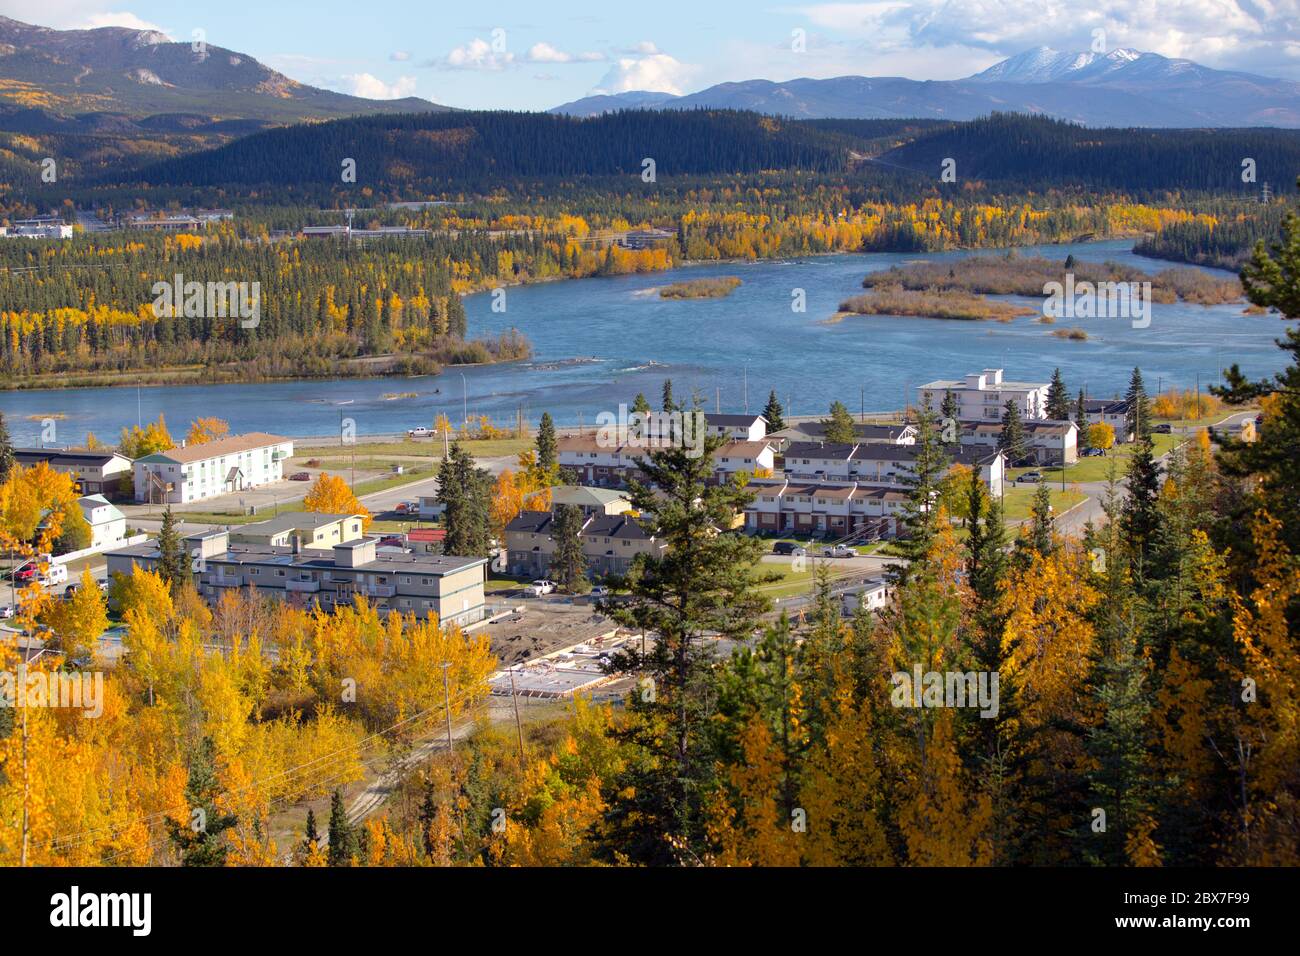 Blick auf die Stadt Whitehorse, Yukon Territory, Kanada. Bild von den Wanderwegen in der Nähe des internationalen Flughafens Erik Nielsen Whitehorse. Stockfoto